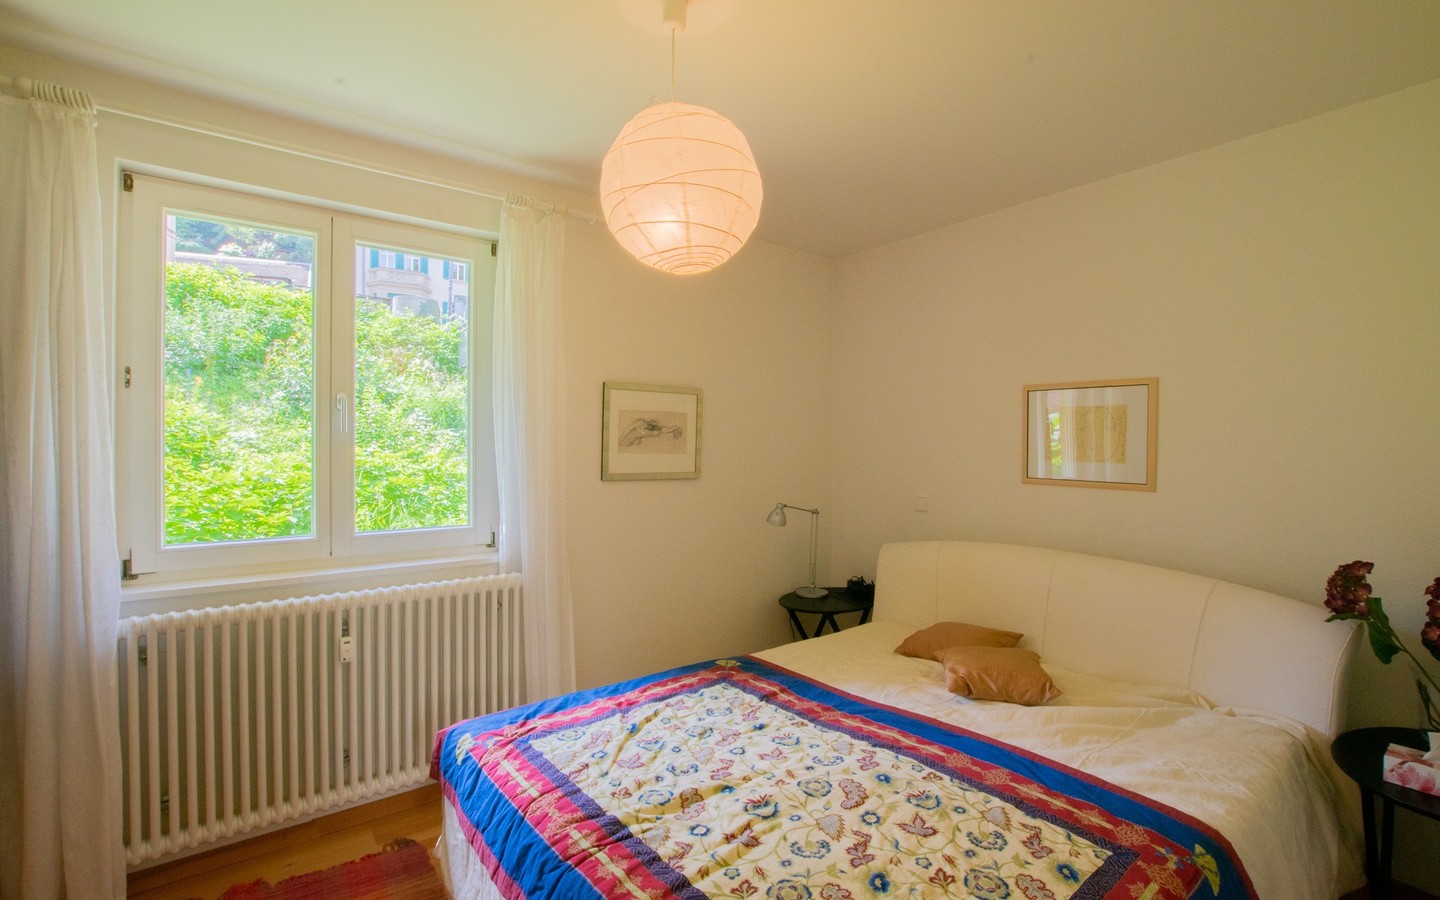 Schlafzimmer - Seltene Gelegenheit: Gepflegte 2-Zimmerwohnung in der Heidelberger ,,Plöck‘‘